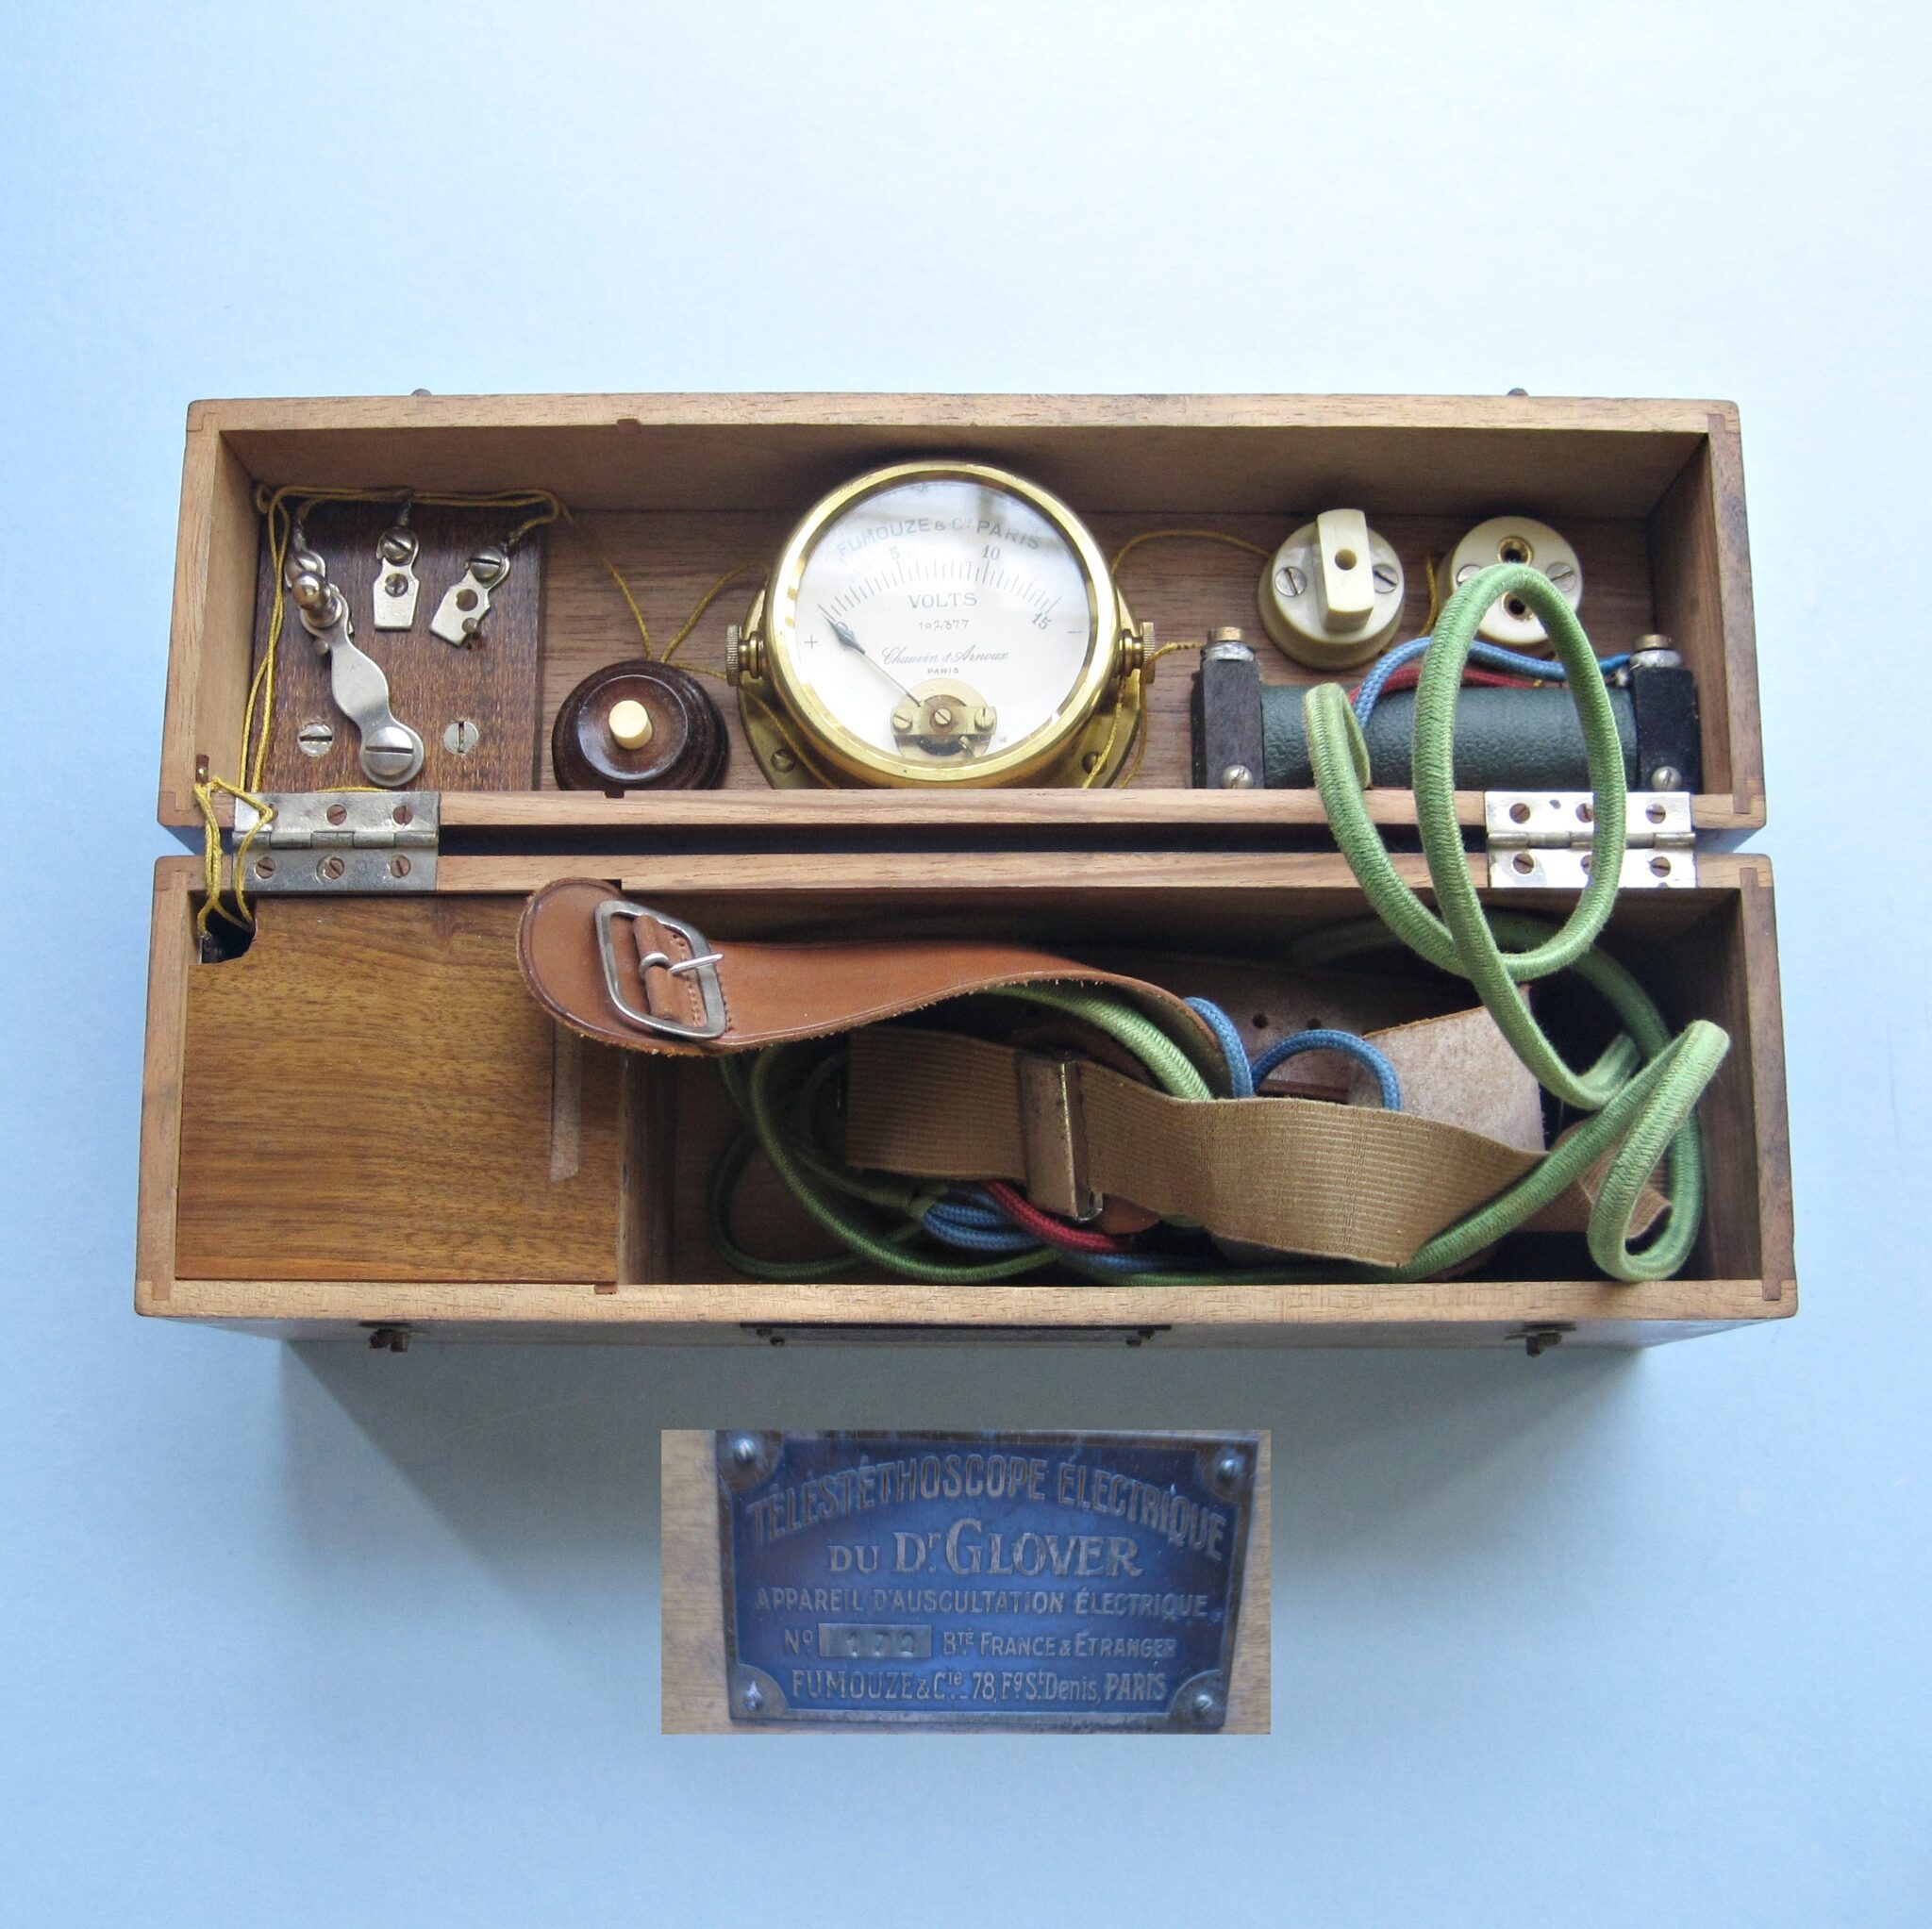 Dr. Glover’s Téléstéthoscope Électrique: Early Electric Stethoscope